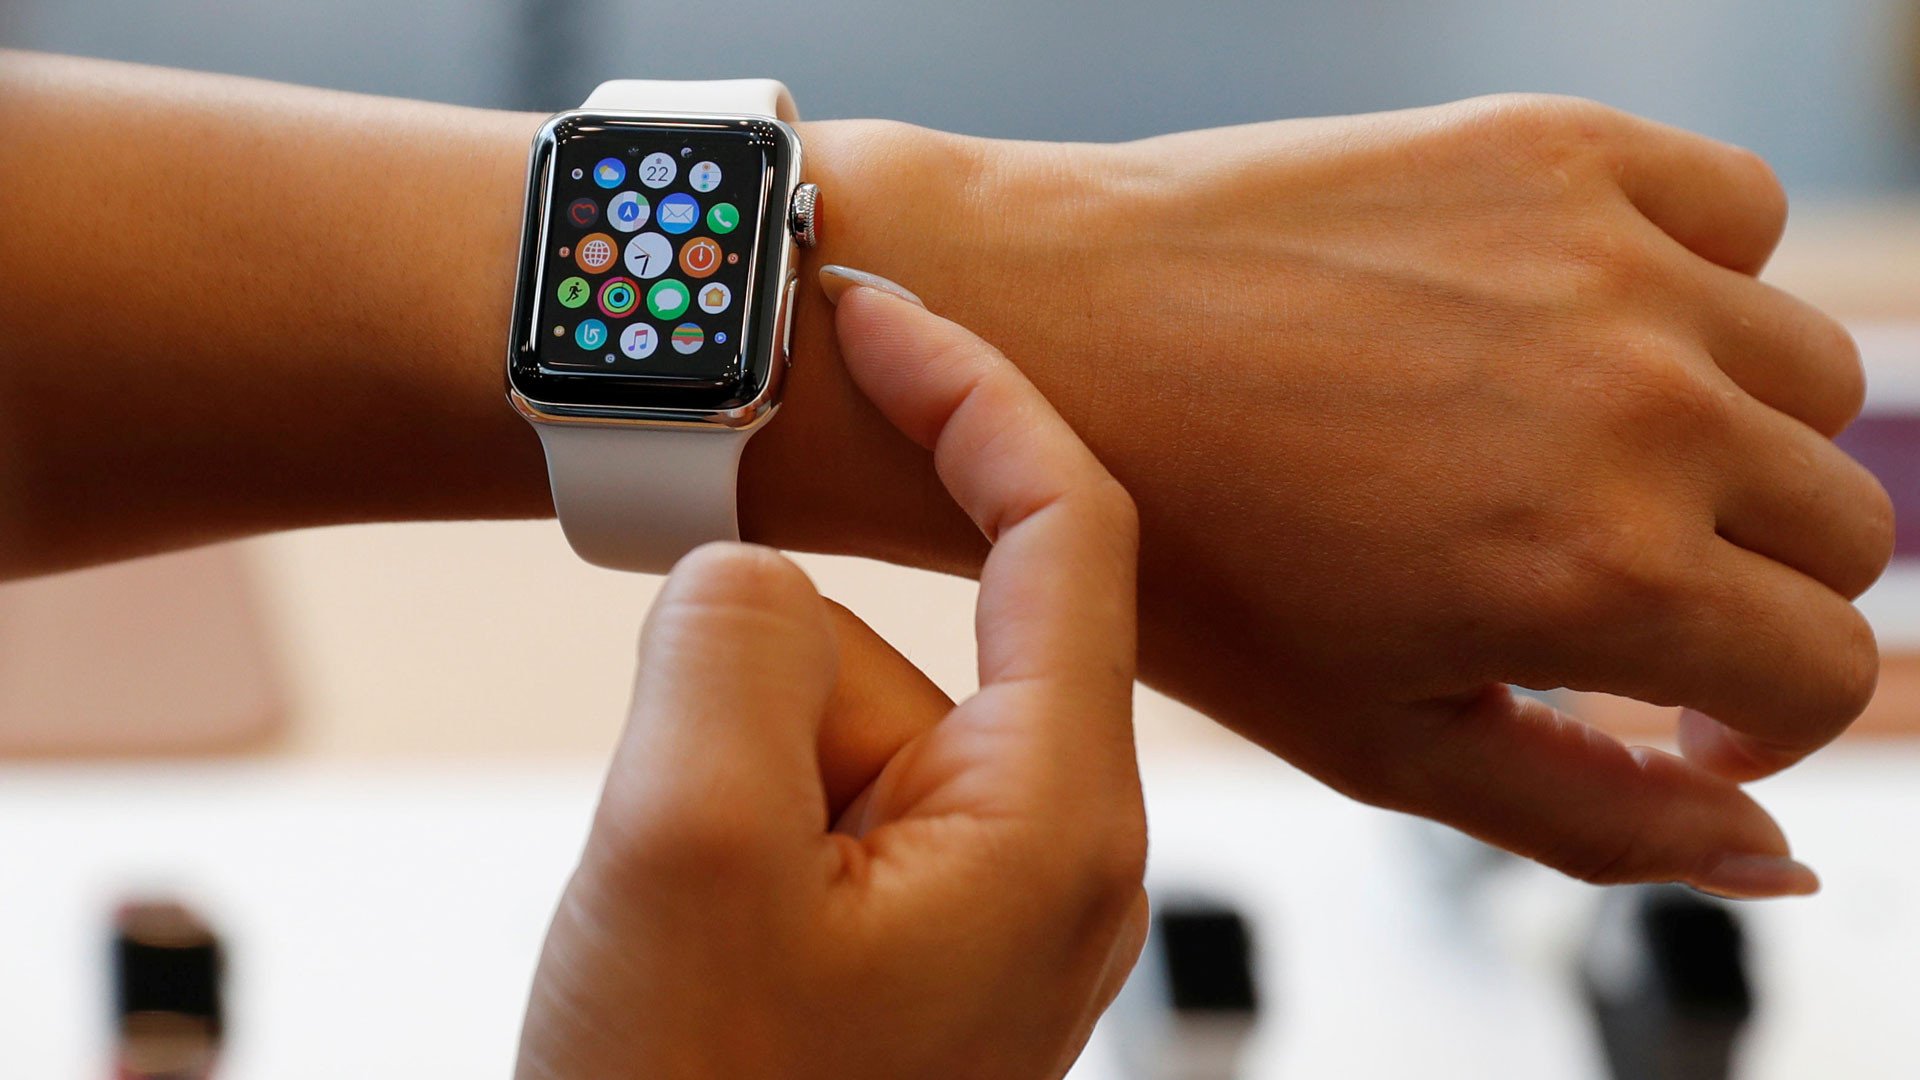 Iphone apple watch 3. Смарт часы эпл вотч 3. Смарт часы эпл вотч 7. Эппл вотч оранжевые. Apple watch Series 3 38mm.